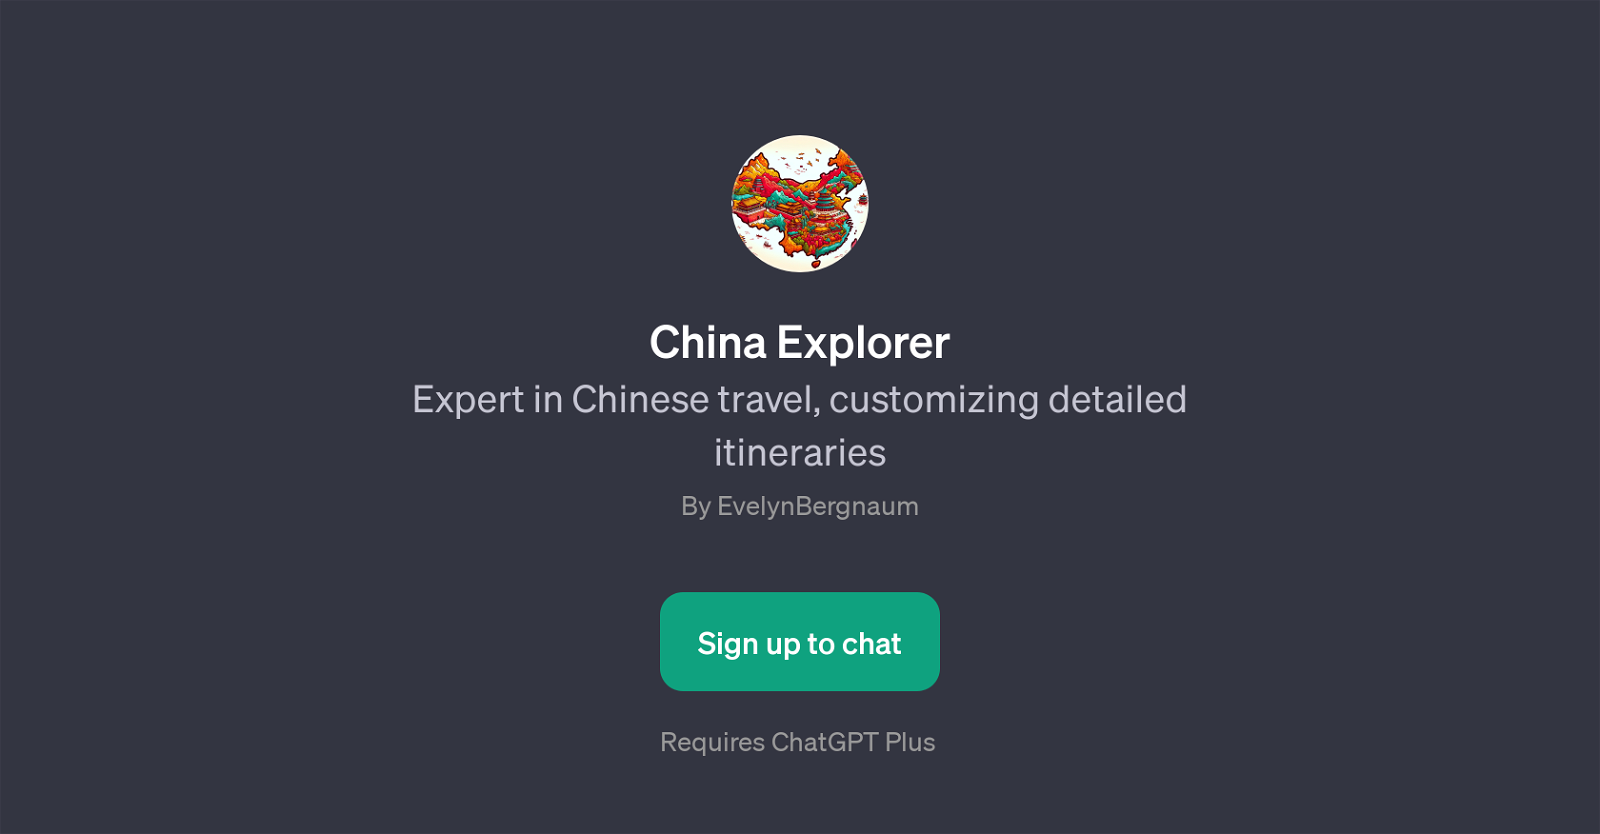 China Explorer website